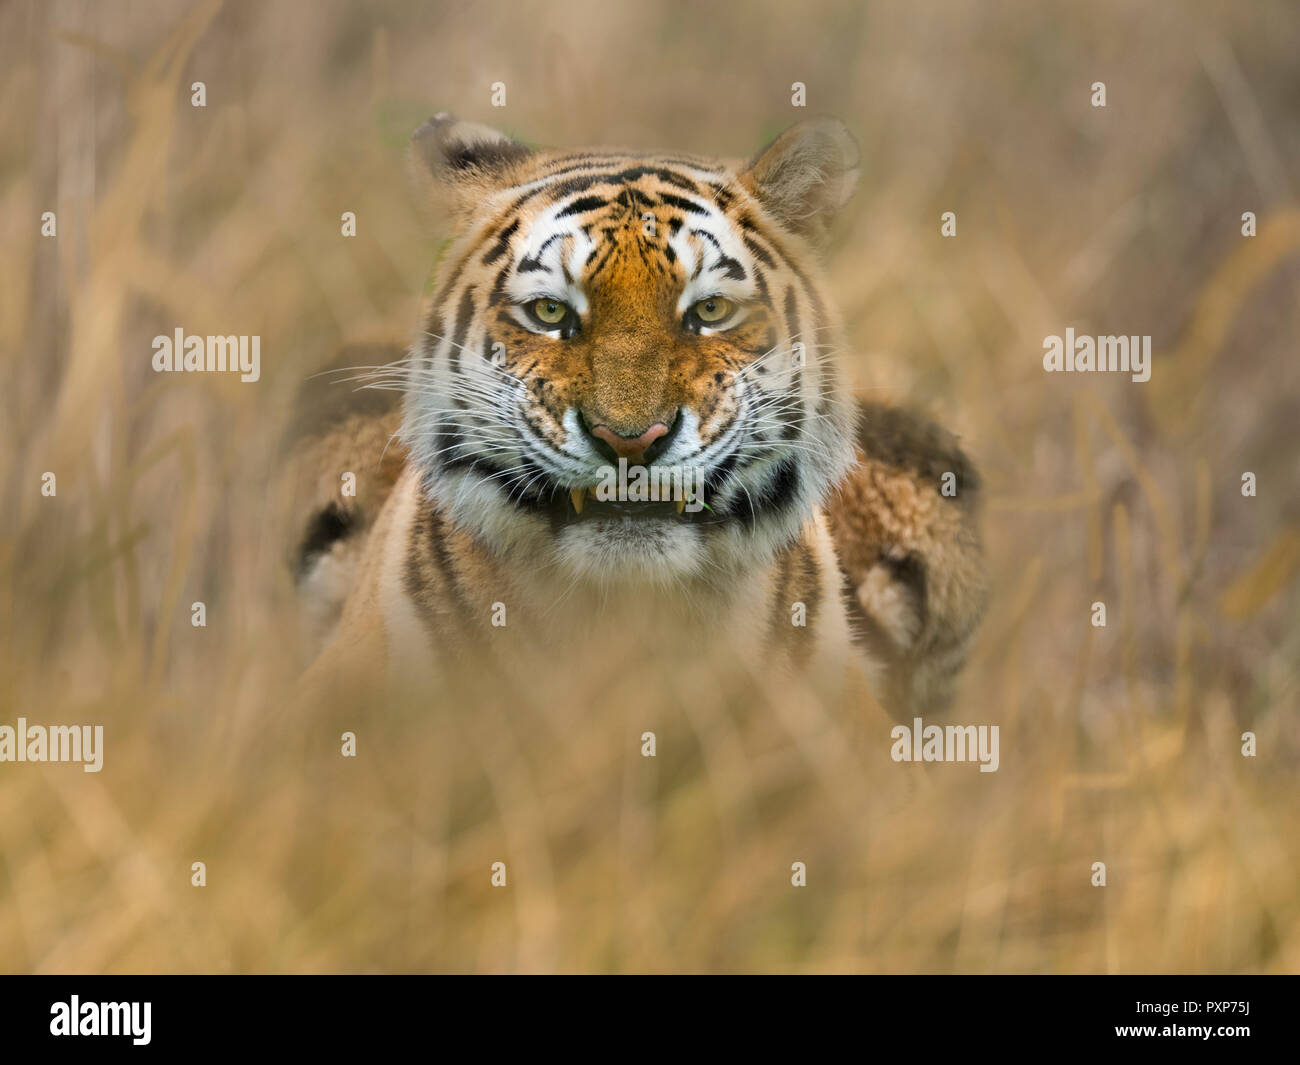 Siberian tiger Panthera tigris tigris  or Amur tiger snarling Stock Photo